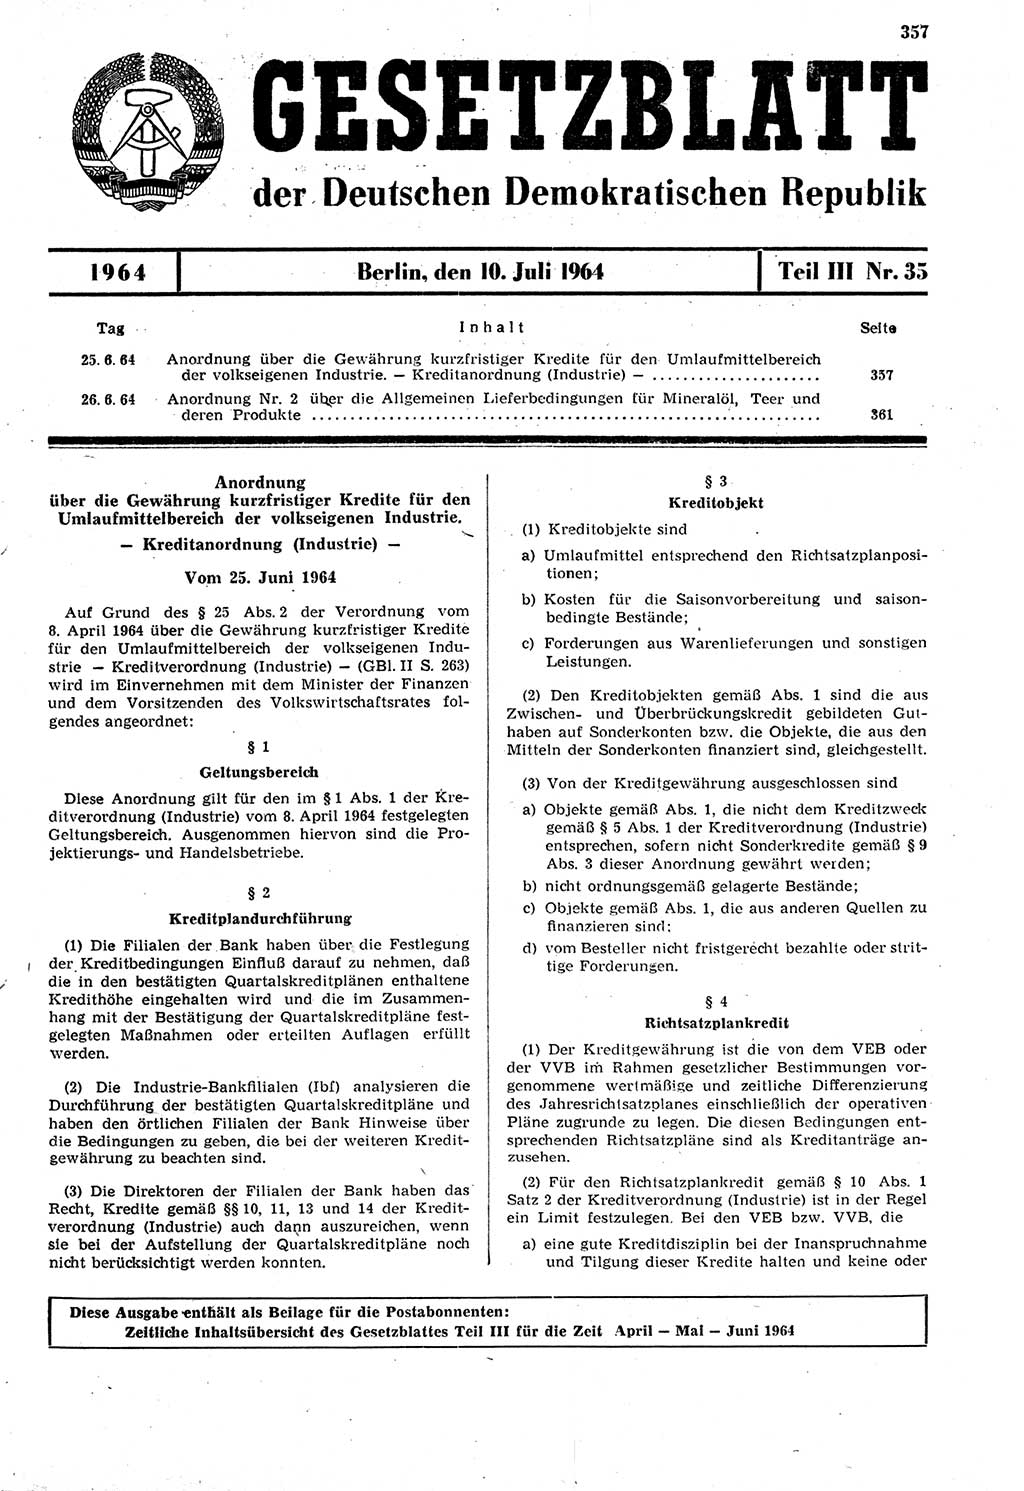 Gesetzblatt (GBl.) der Deutschen Demokratischen Republik (DDR) Teil ⅠⅠⅠ 1964, Seite 357 (GBl. DDR ⅠⅠⅠ 1964, S. 357)